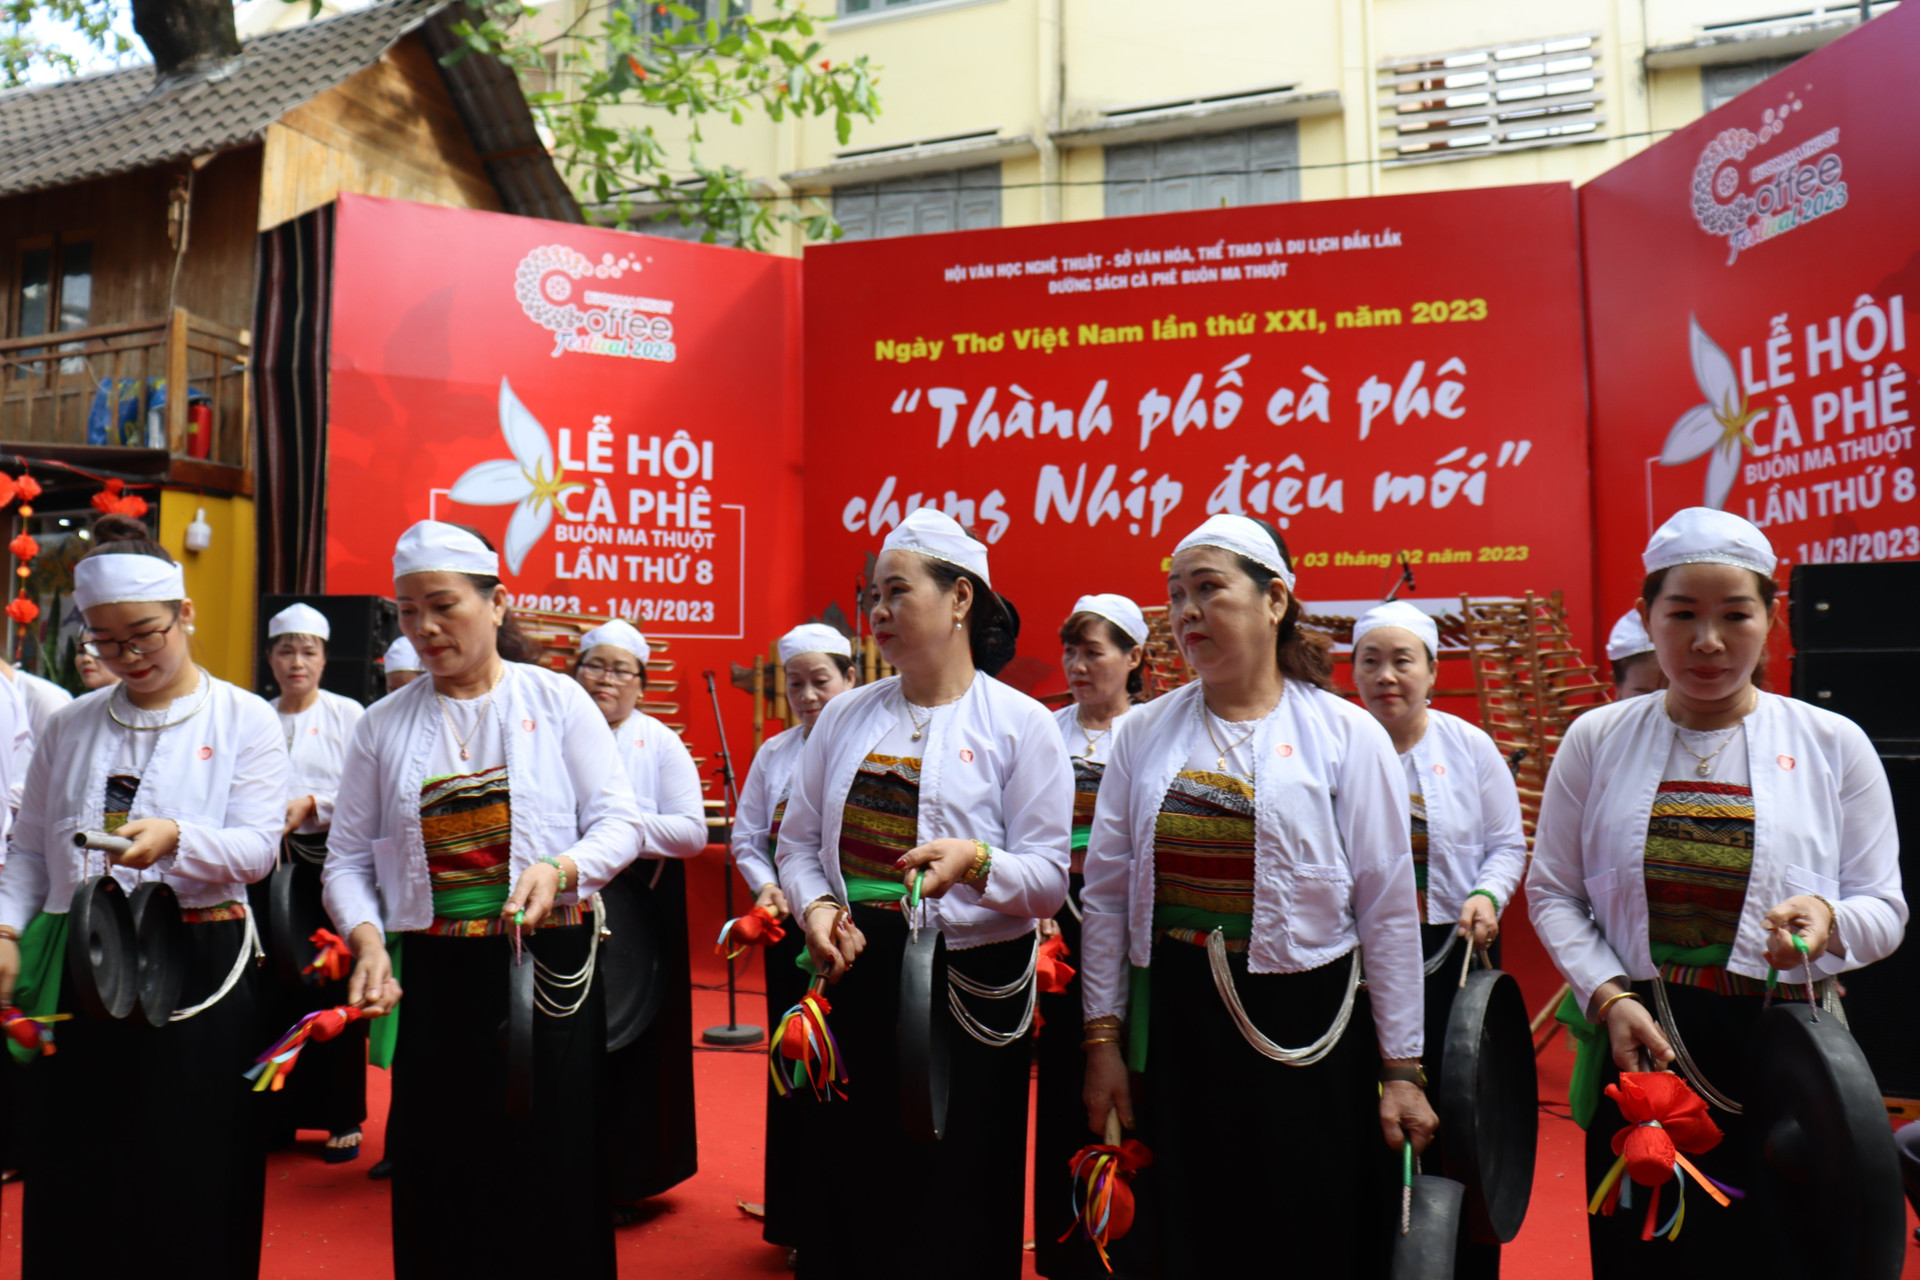 Đội Chiêng Mường xã Hoà Thắng, TP Buôn Ma Thuột trình diễn tại chương trình.